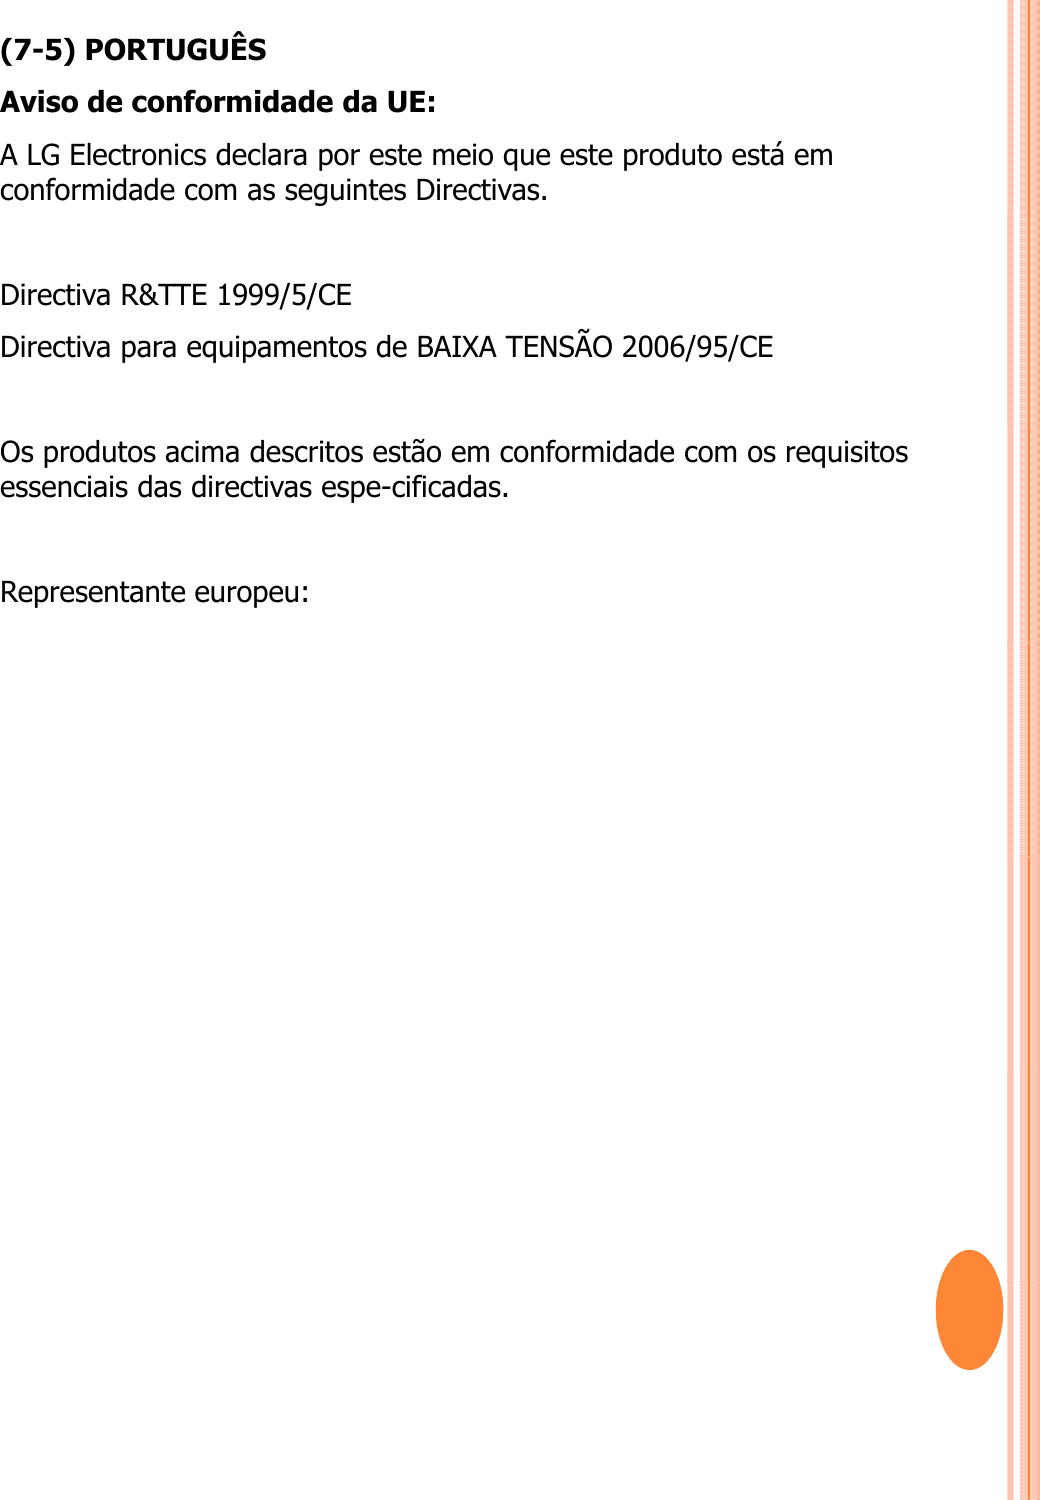 (7-5) PORTUGUÊSAviso de conformidade da UE: A LG Electronics declara por este meio que este produto está em conformidade com as seguintes Directivas. Directiva R&amp;TTE 1999/5/CE Directiva para equipamentos de BAIXA TENSÃO 2006/95/CE Os produtos acima descritos estão em conformidade com os requisitos essenciais das directivas espe-cificadas. Representante europeu: 